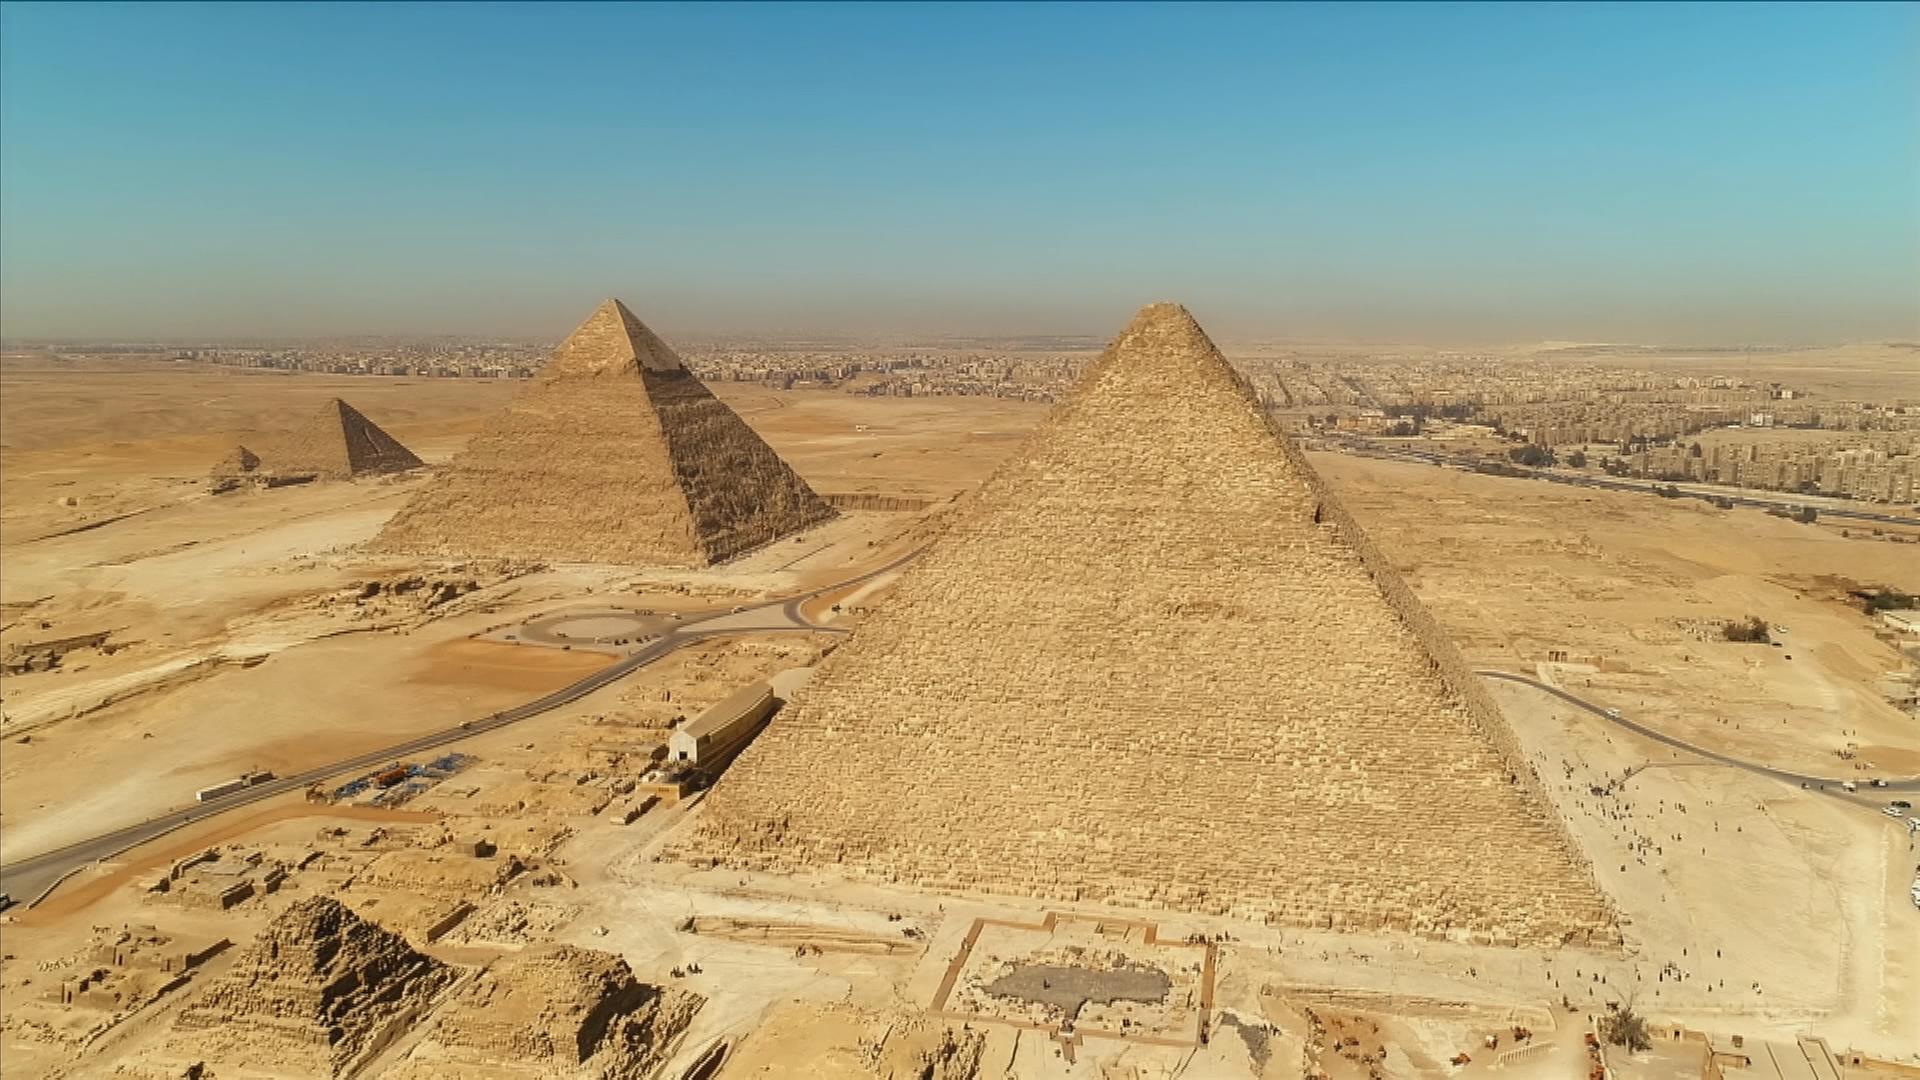 Luftbild der drei Großen Pyramiden von Gizeh. Im Vordergrund liegt die Cheops-Pyramide links dahinter die Chefren-Pyramide. Im Hintergrund liegt die Pyramide des Mykerinos, die kleinste der drei Pyramiden.